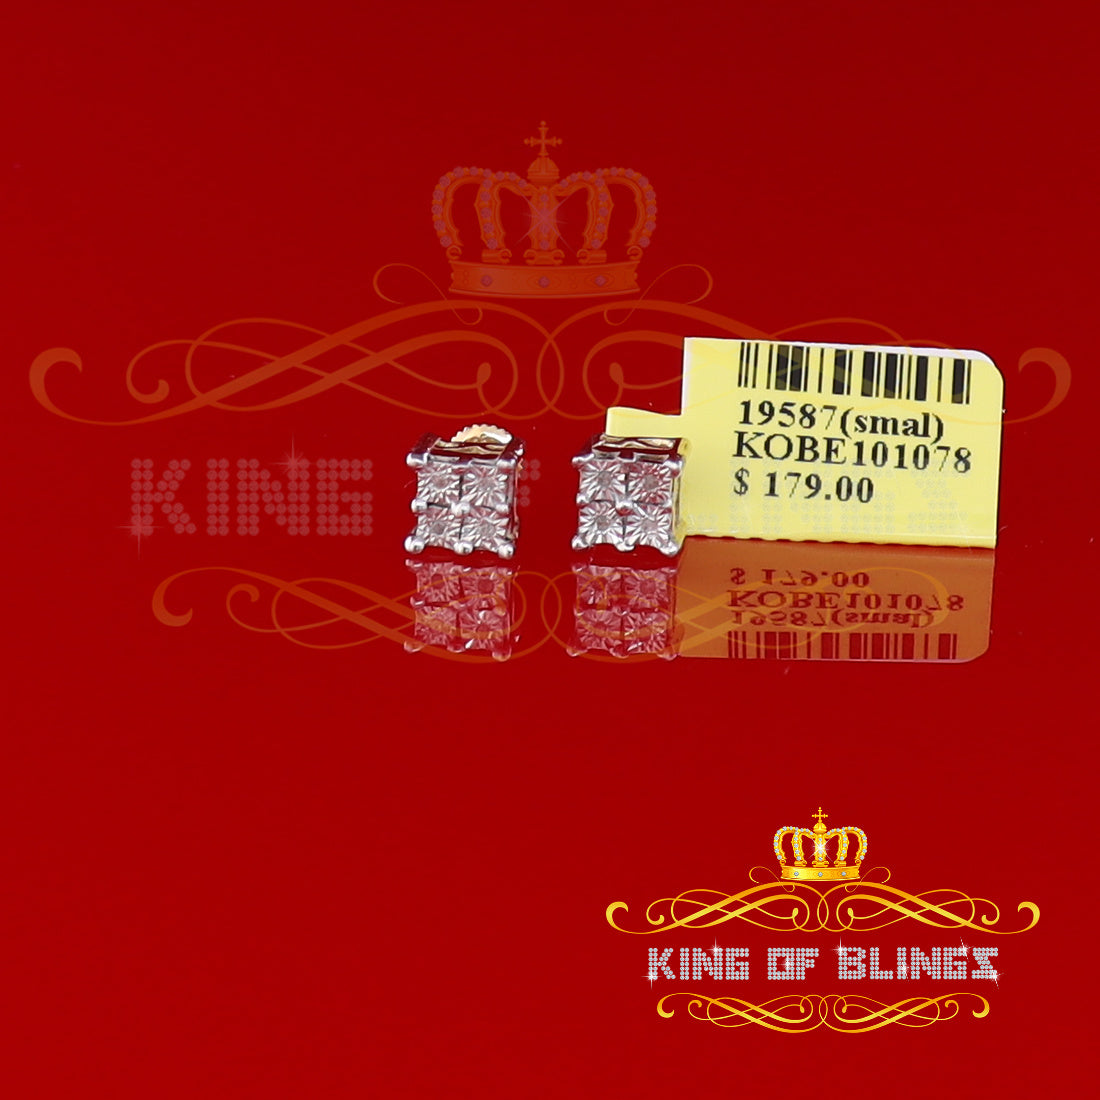 King of Blings-0.03ct Diamond Stud Earrings For Women Yellow 925 Sterling Silver Stud For Men KING OF BLINGS